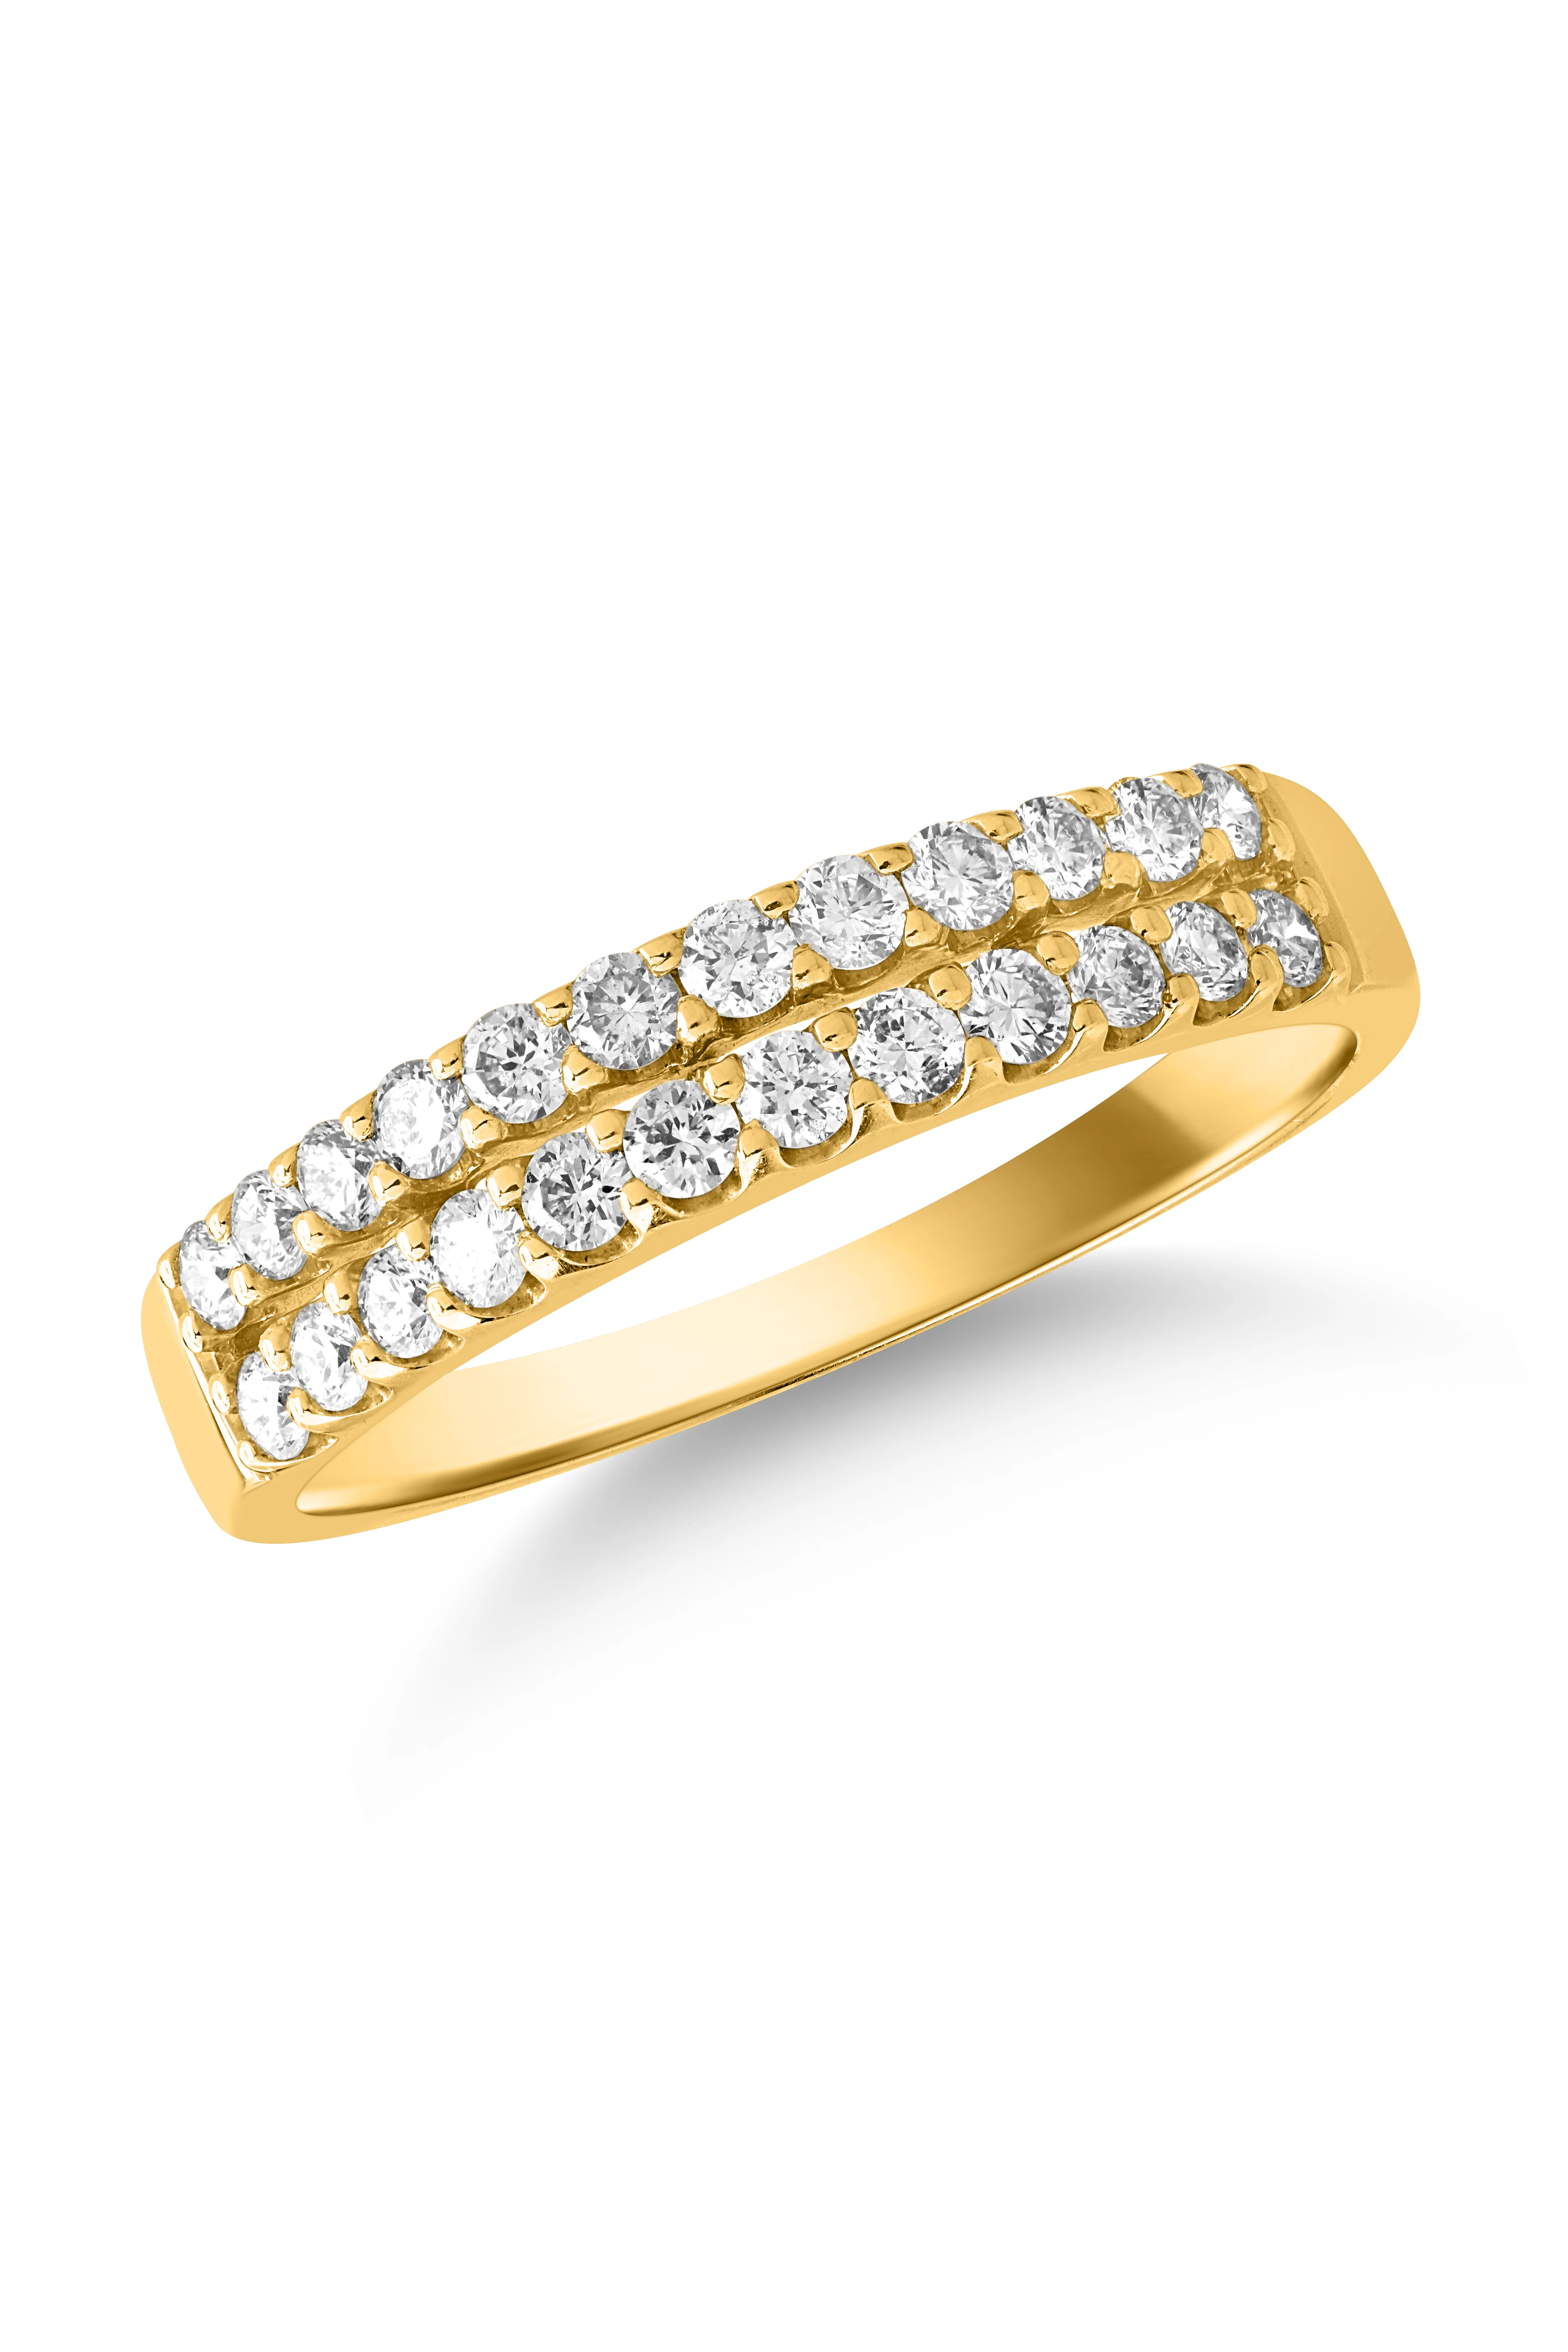 14 karátos sárga arany gyűrű 0.504 karátos gyémántokkal